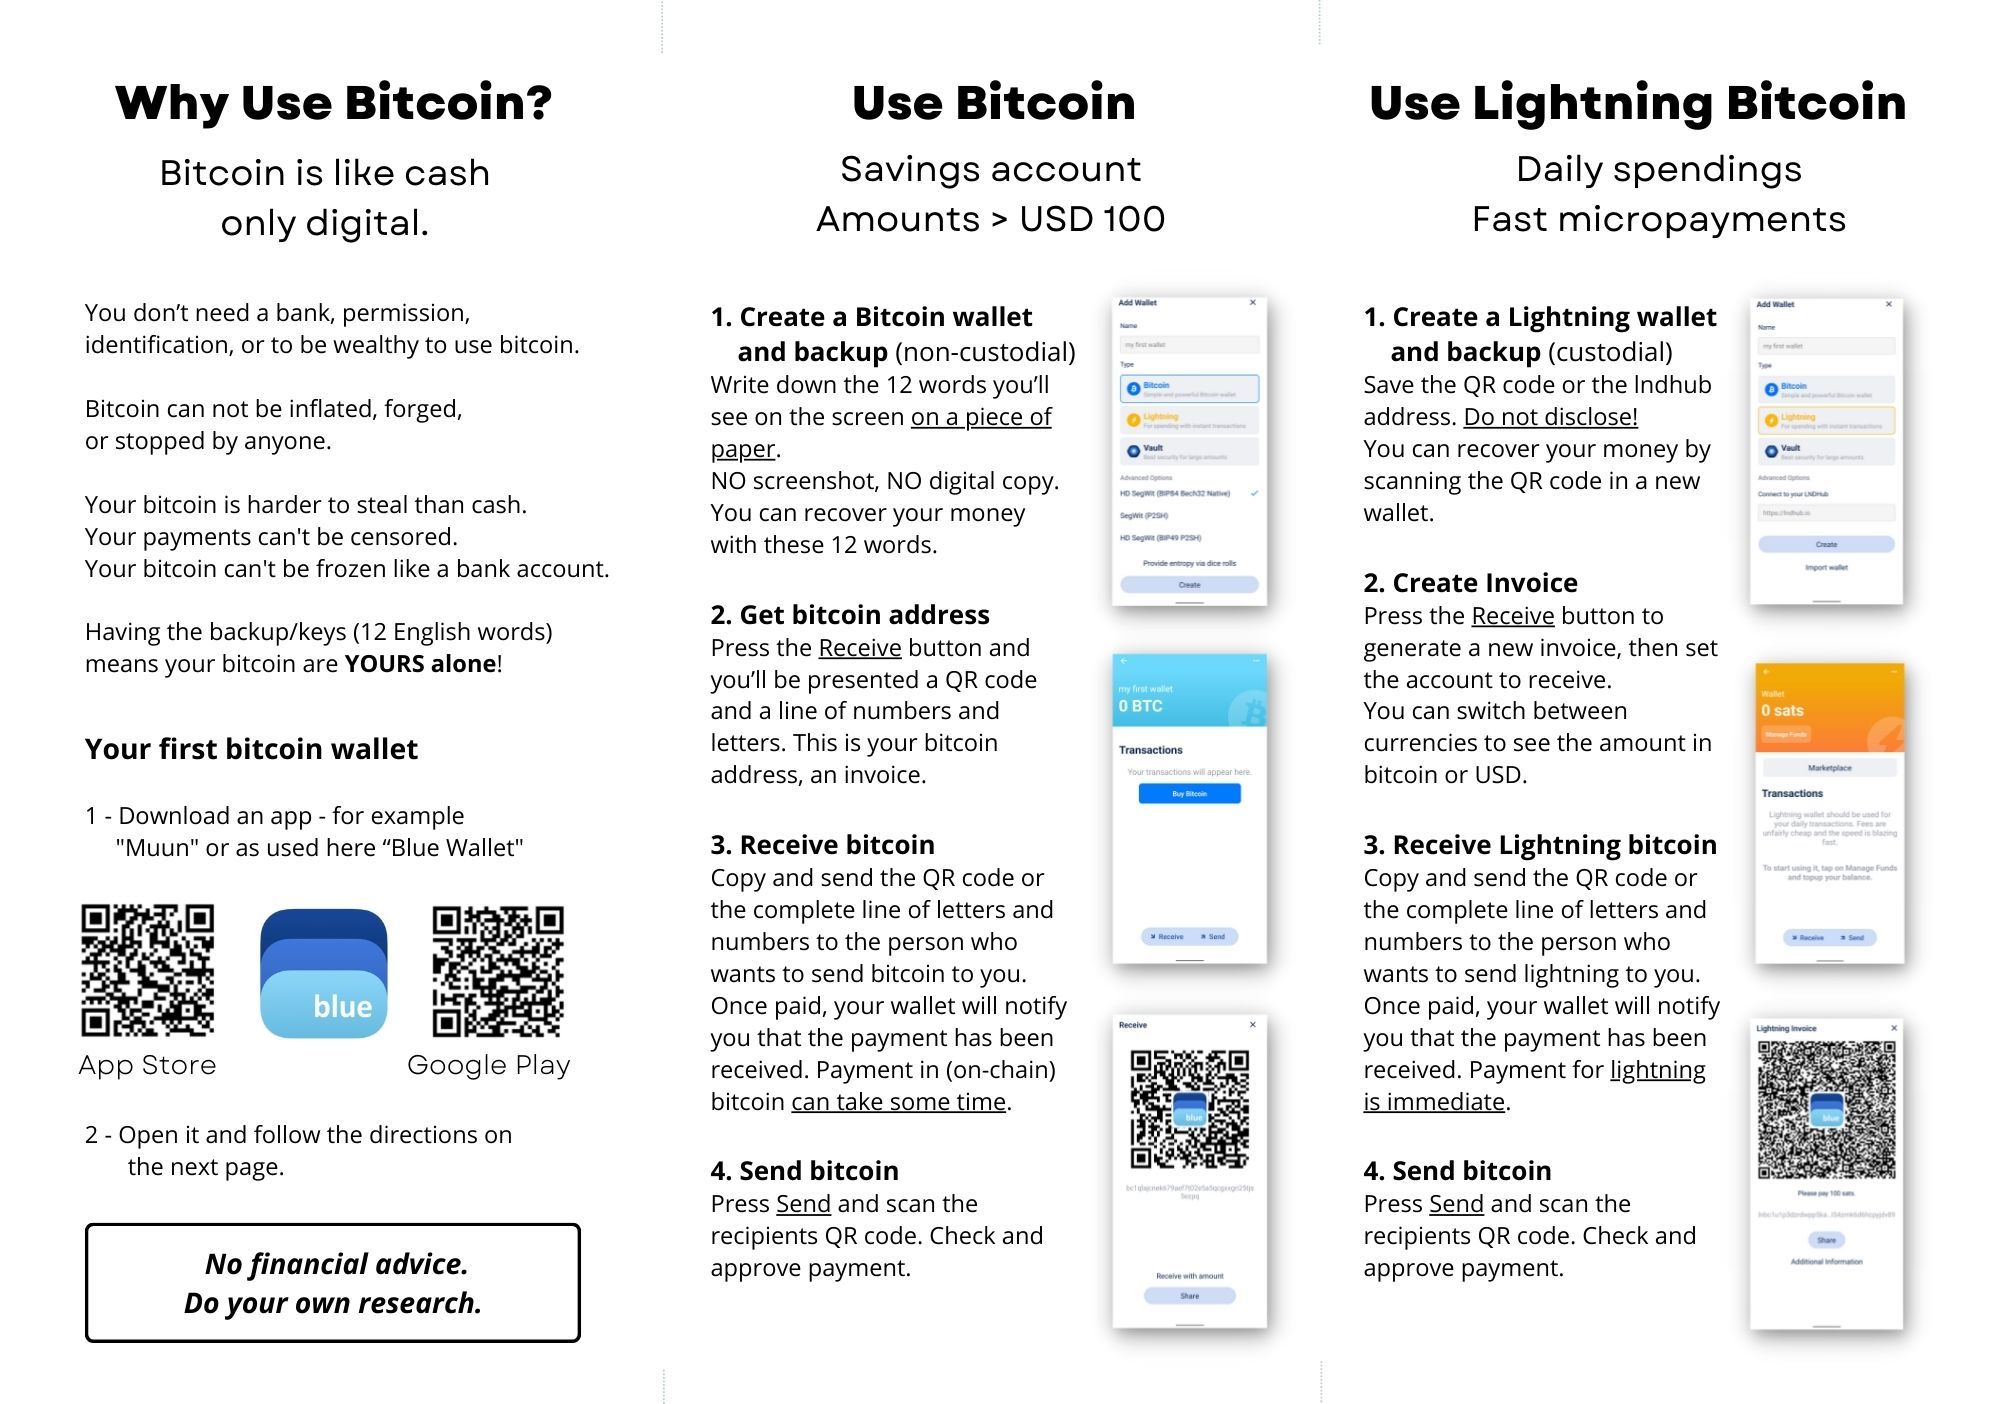 The Bitcoin flyer